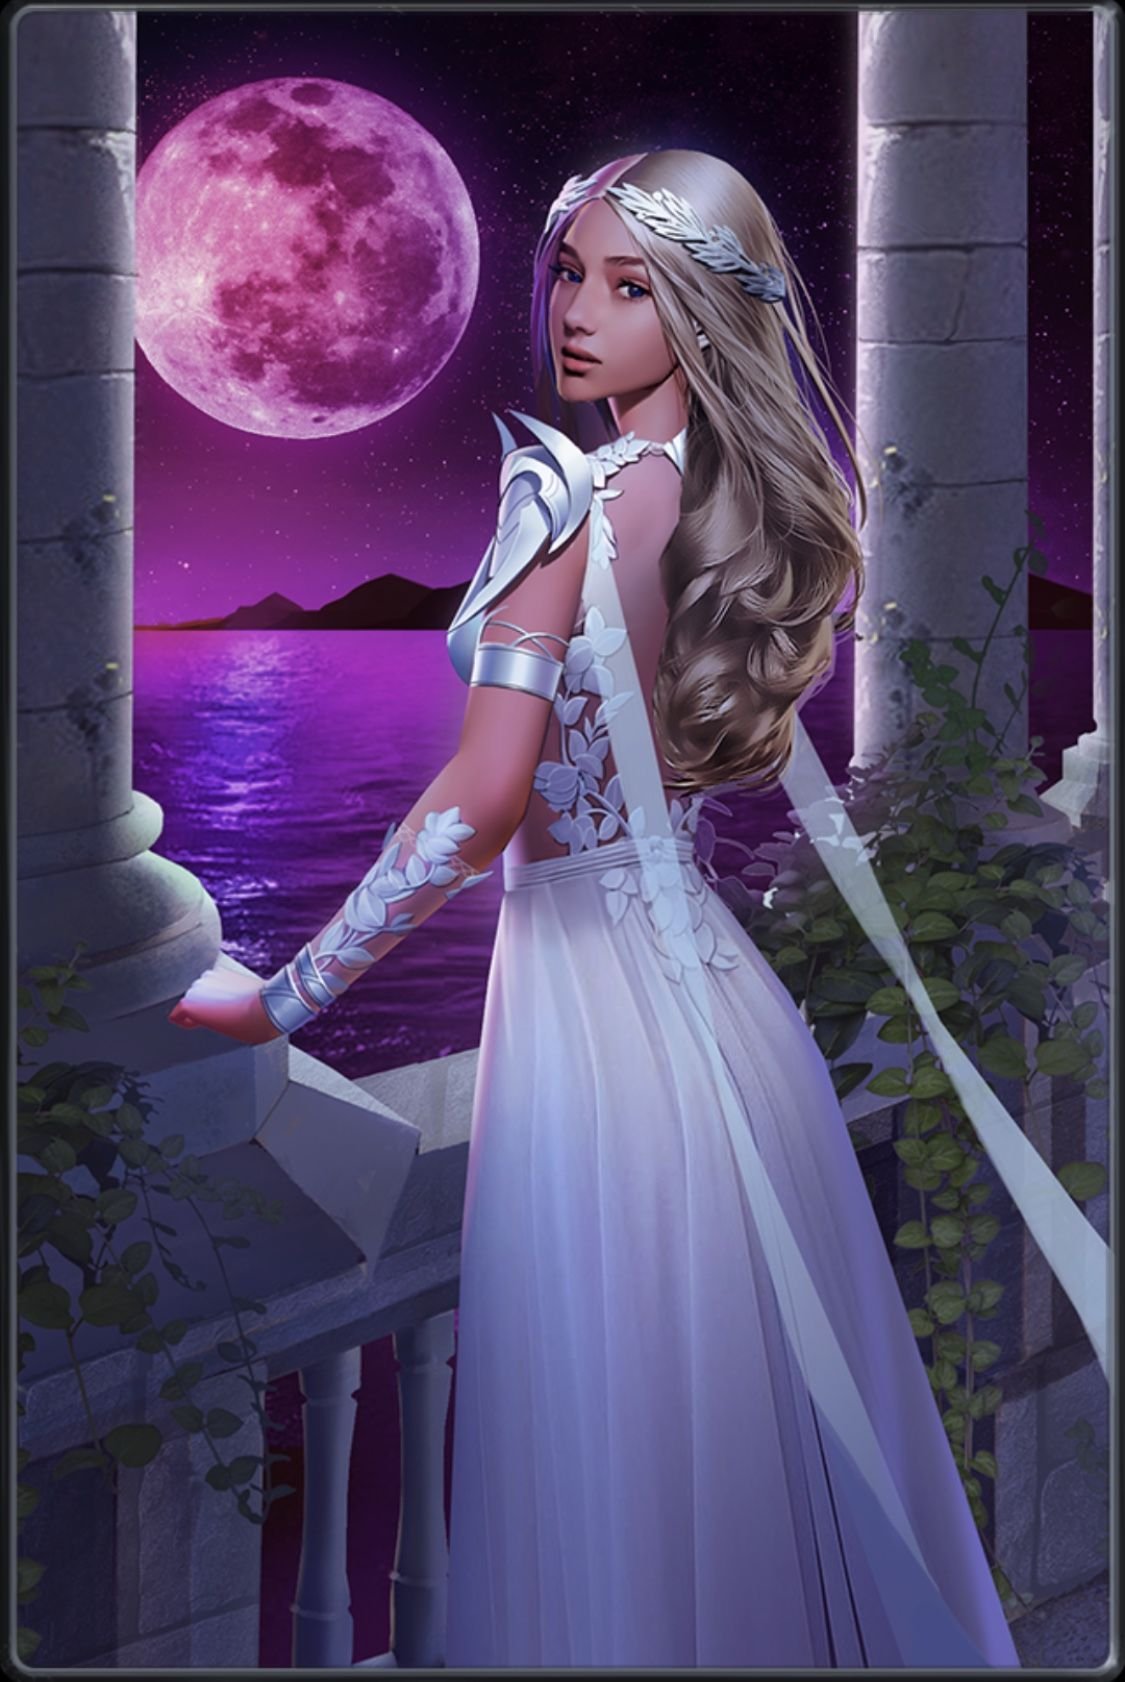 Селена, в греческой мифологии олицетворение луны